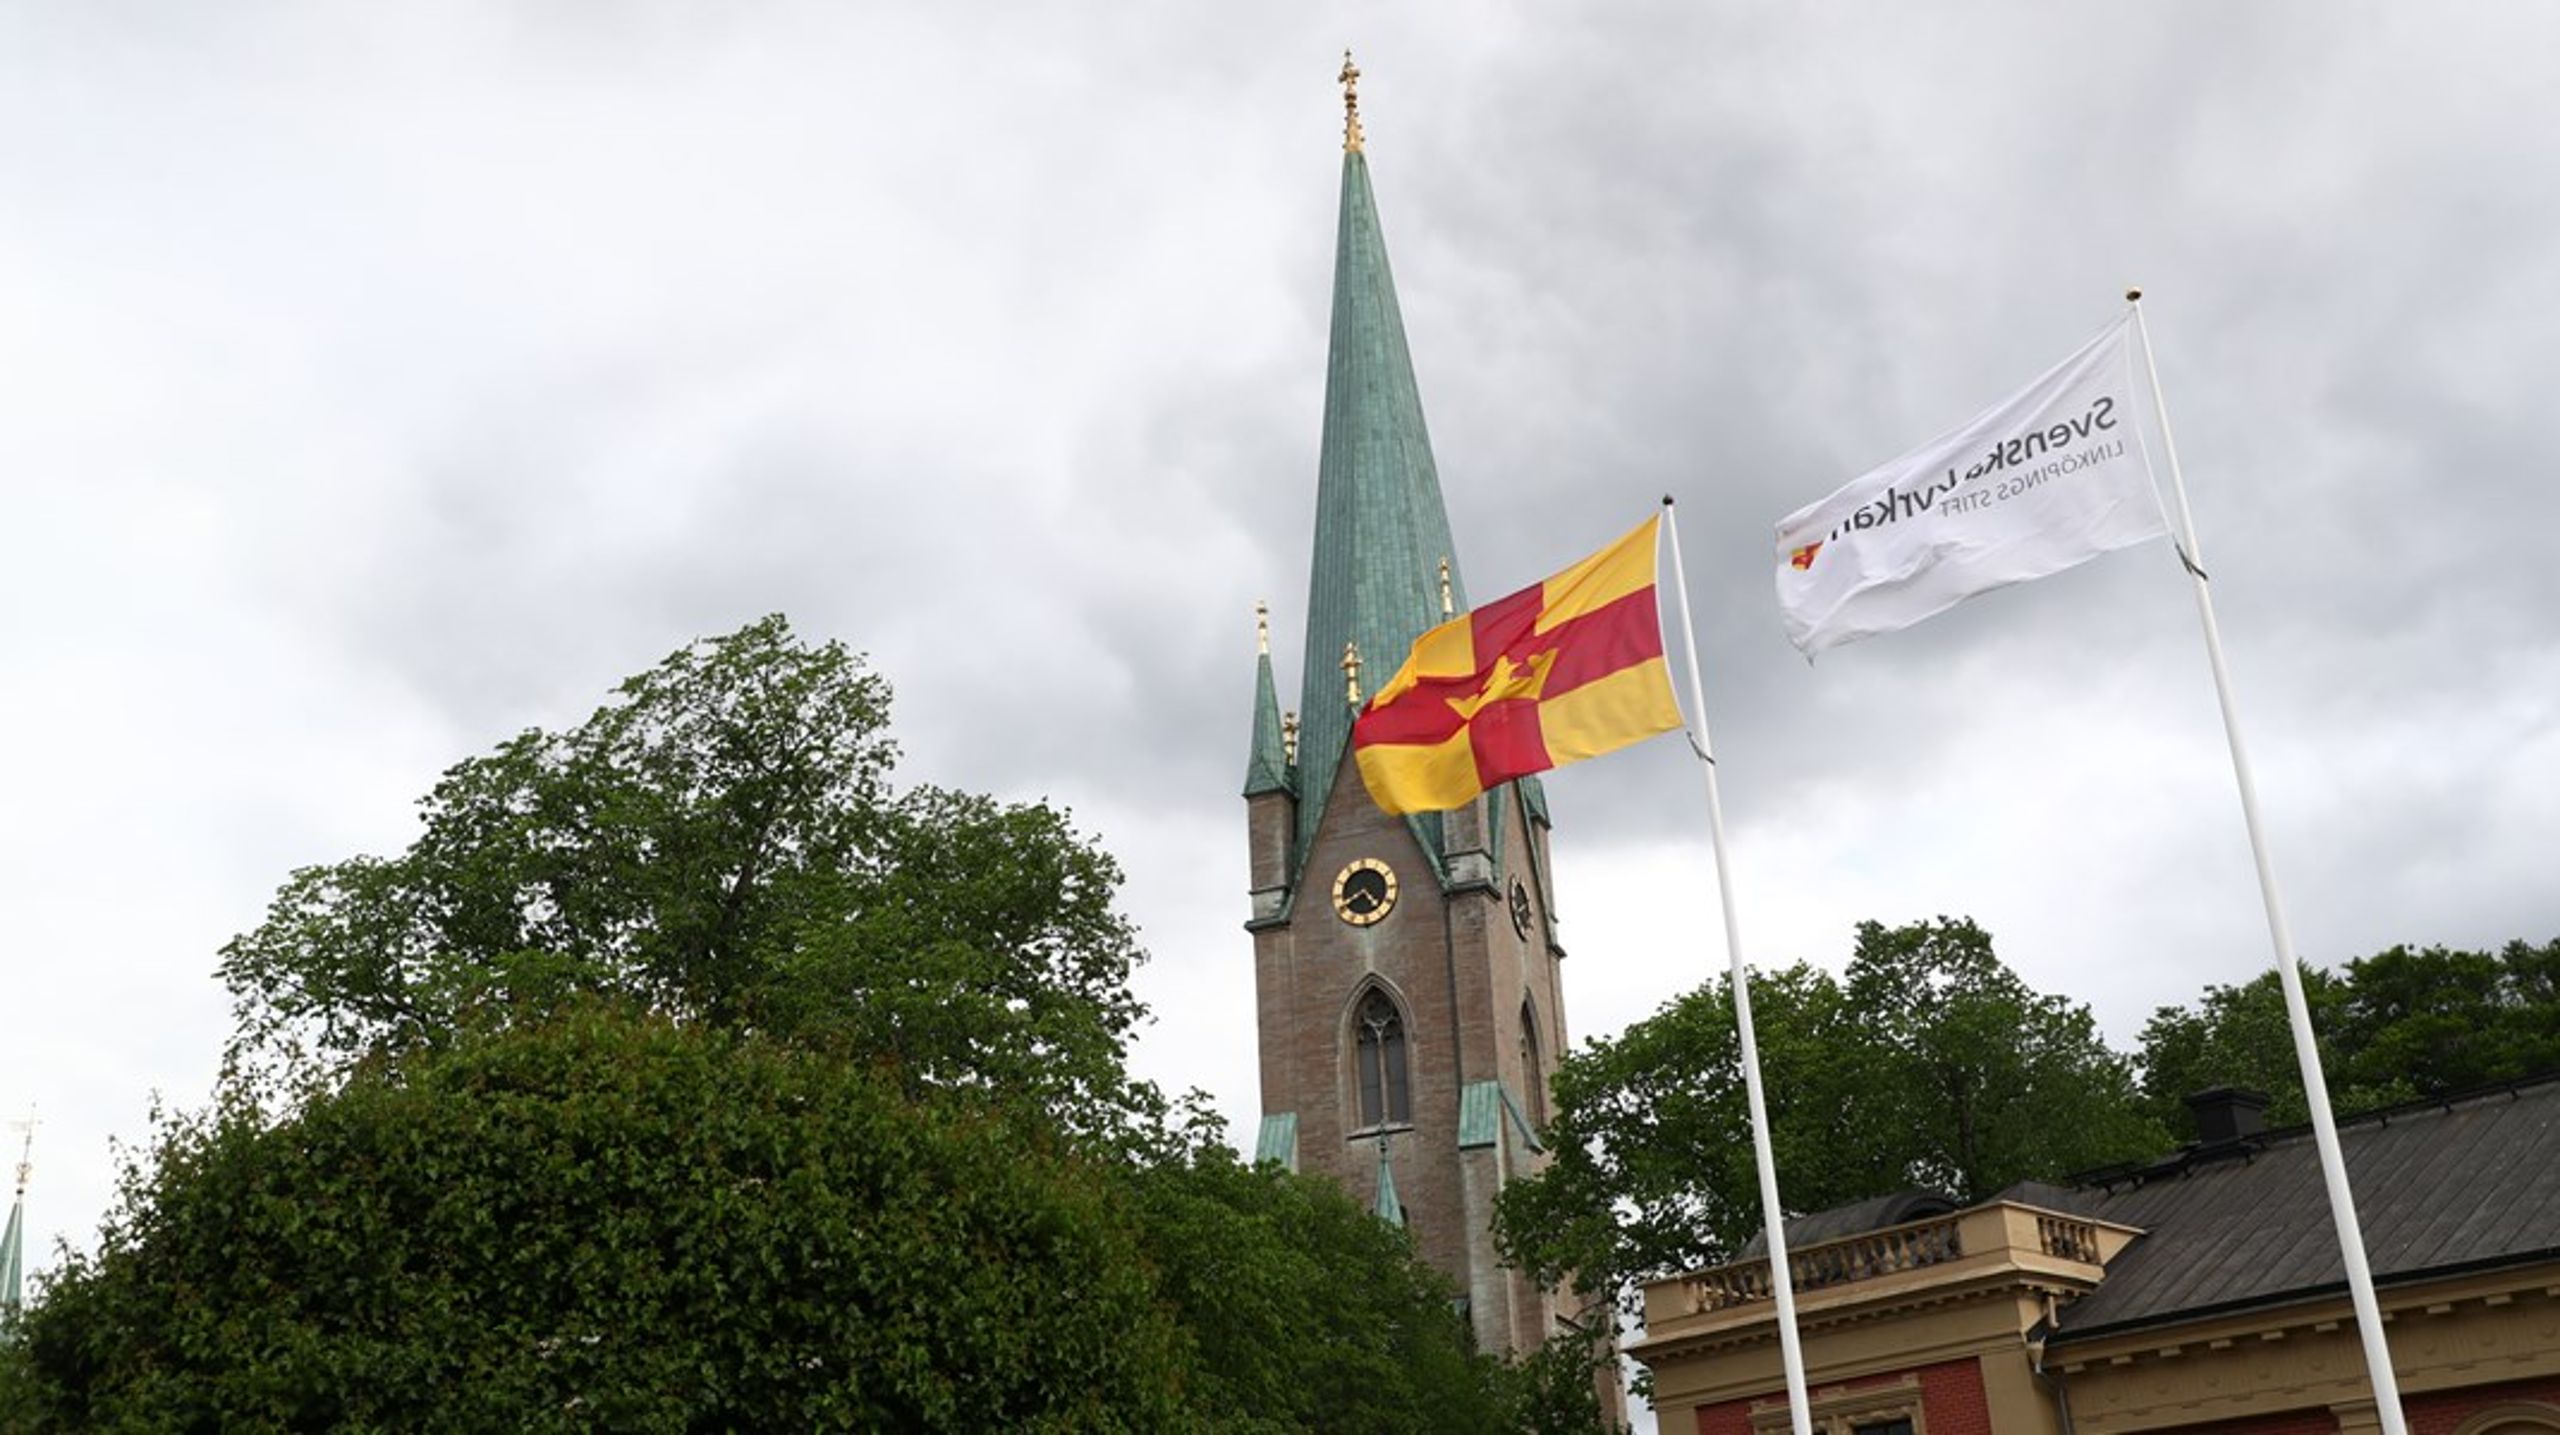 ”En av Svenska kyrkans stora utmaningar är att rekrytera framtidens medarbetare”, säger&nbsp;Sten Lycke, biträdande förhandlingschef Svenska kyrkans arbetsgivarorganisation, som nått ett avtal om aspirantanställning.&nbsp;